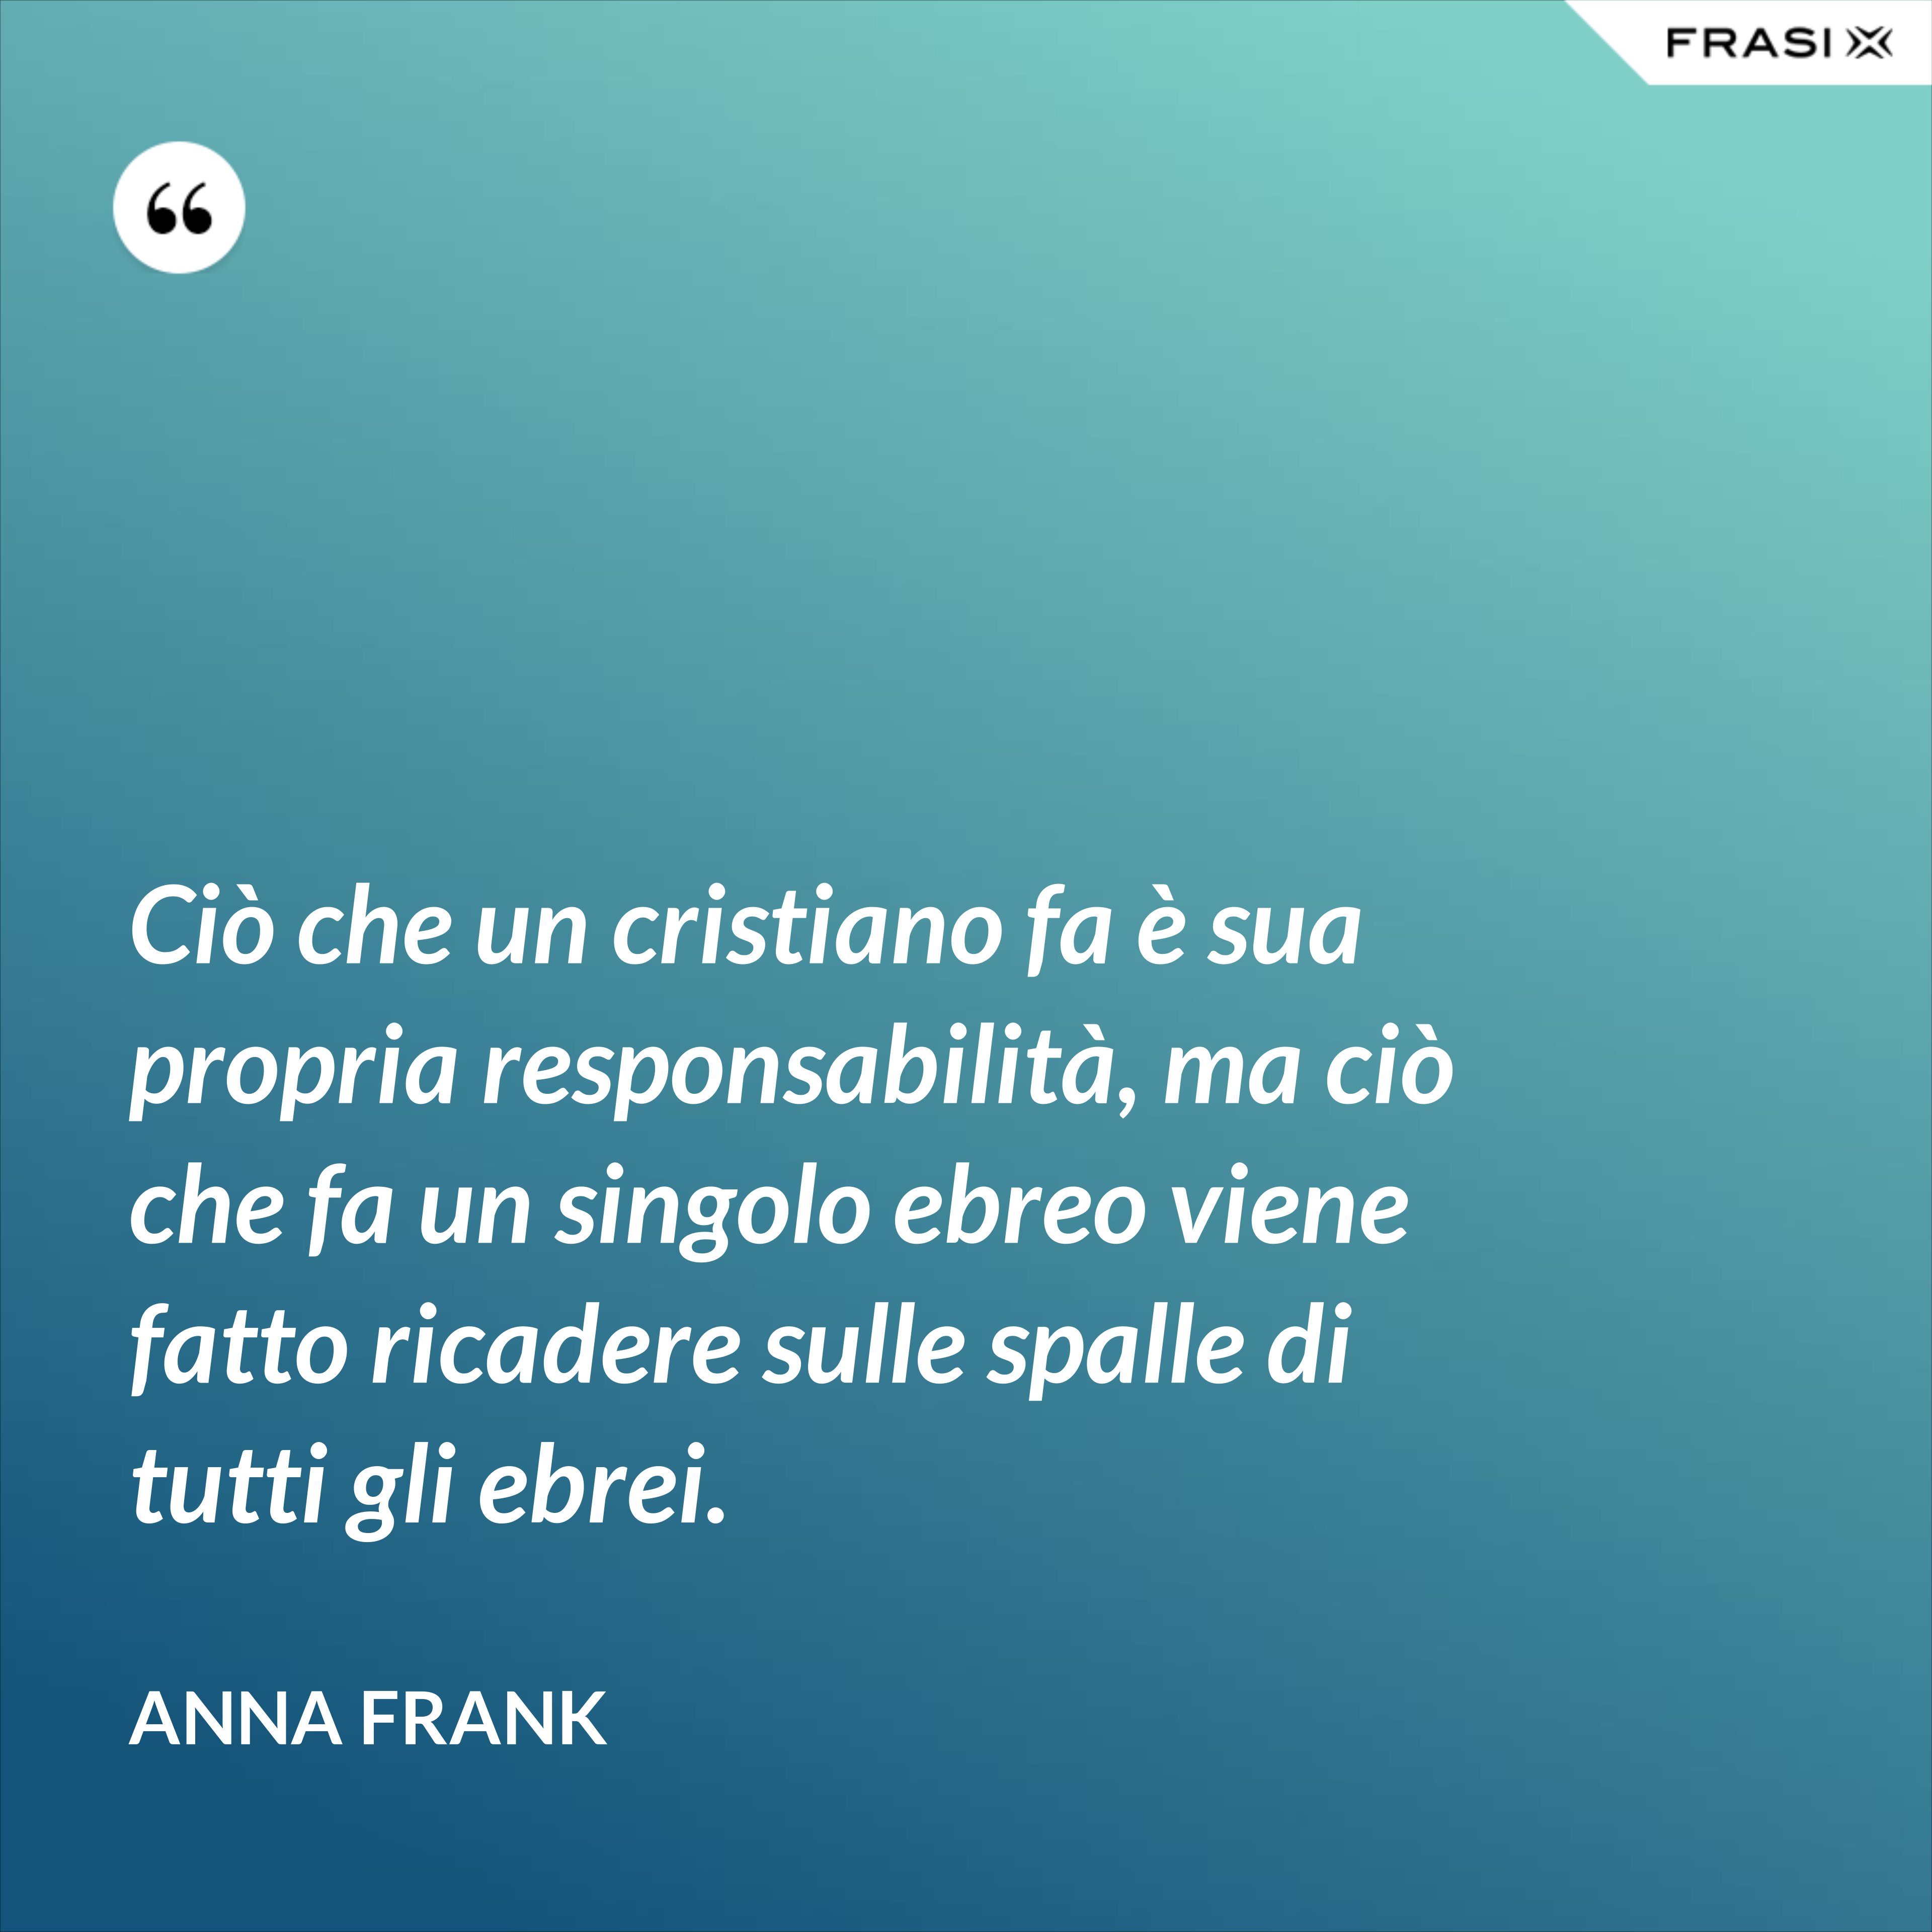 Ciò che un cristiano fa è sua propria responsabilità, ma ciò che fa un singolo ebreo viene fatto ricadere sulle spalle di tutti gli ebrei. - Anna Frank